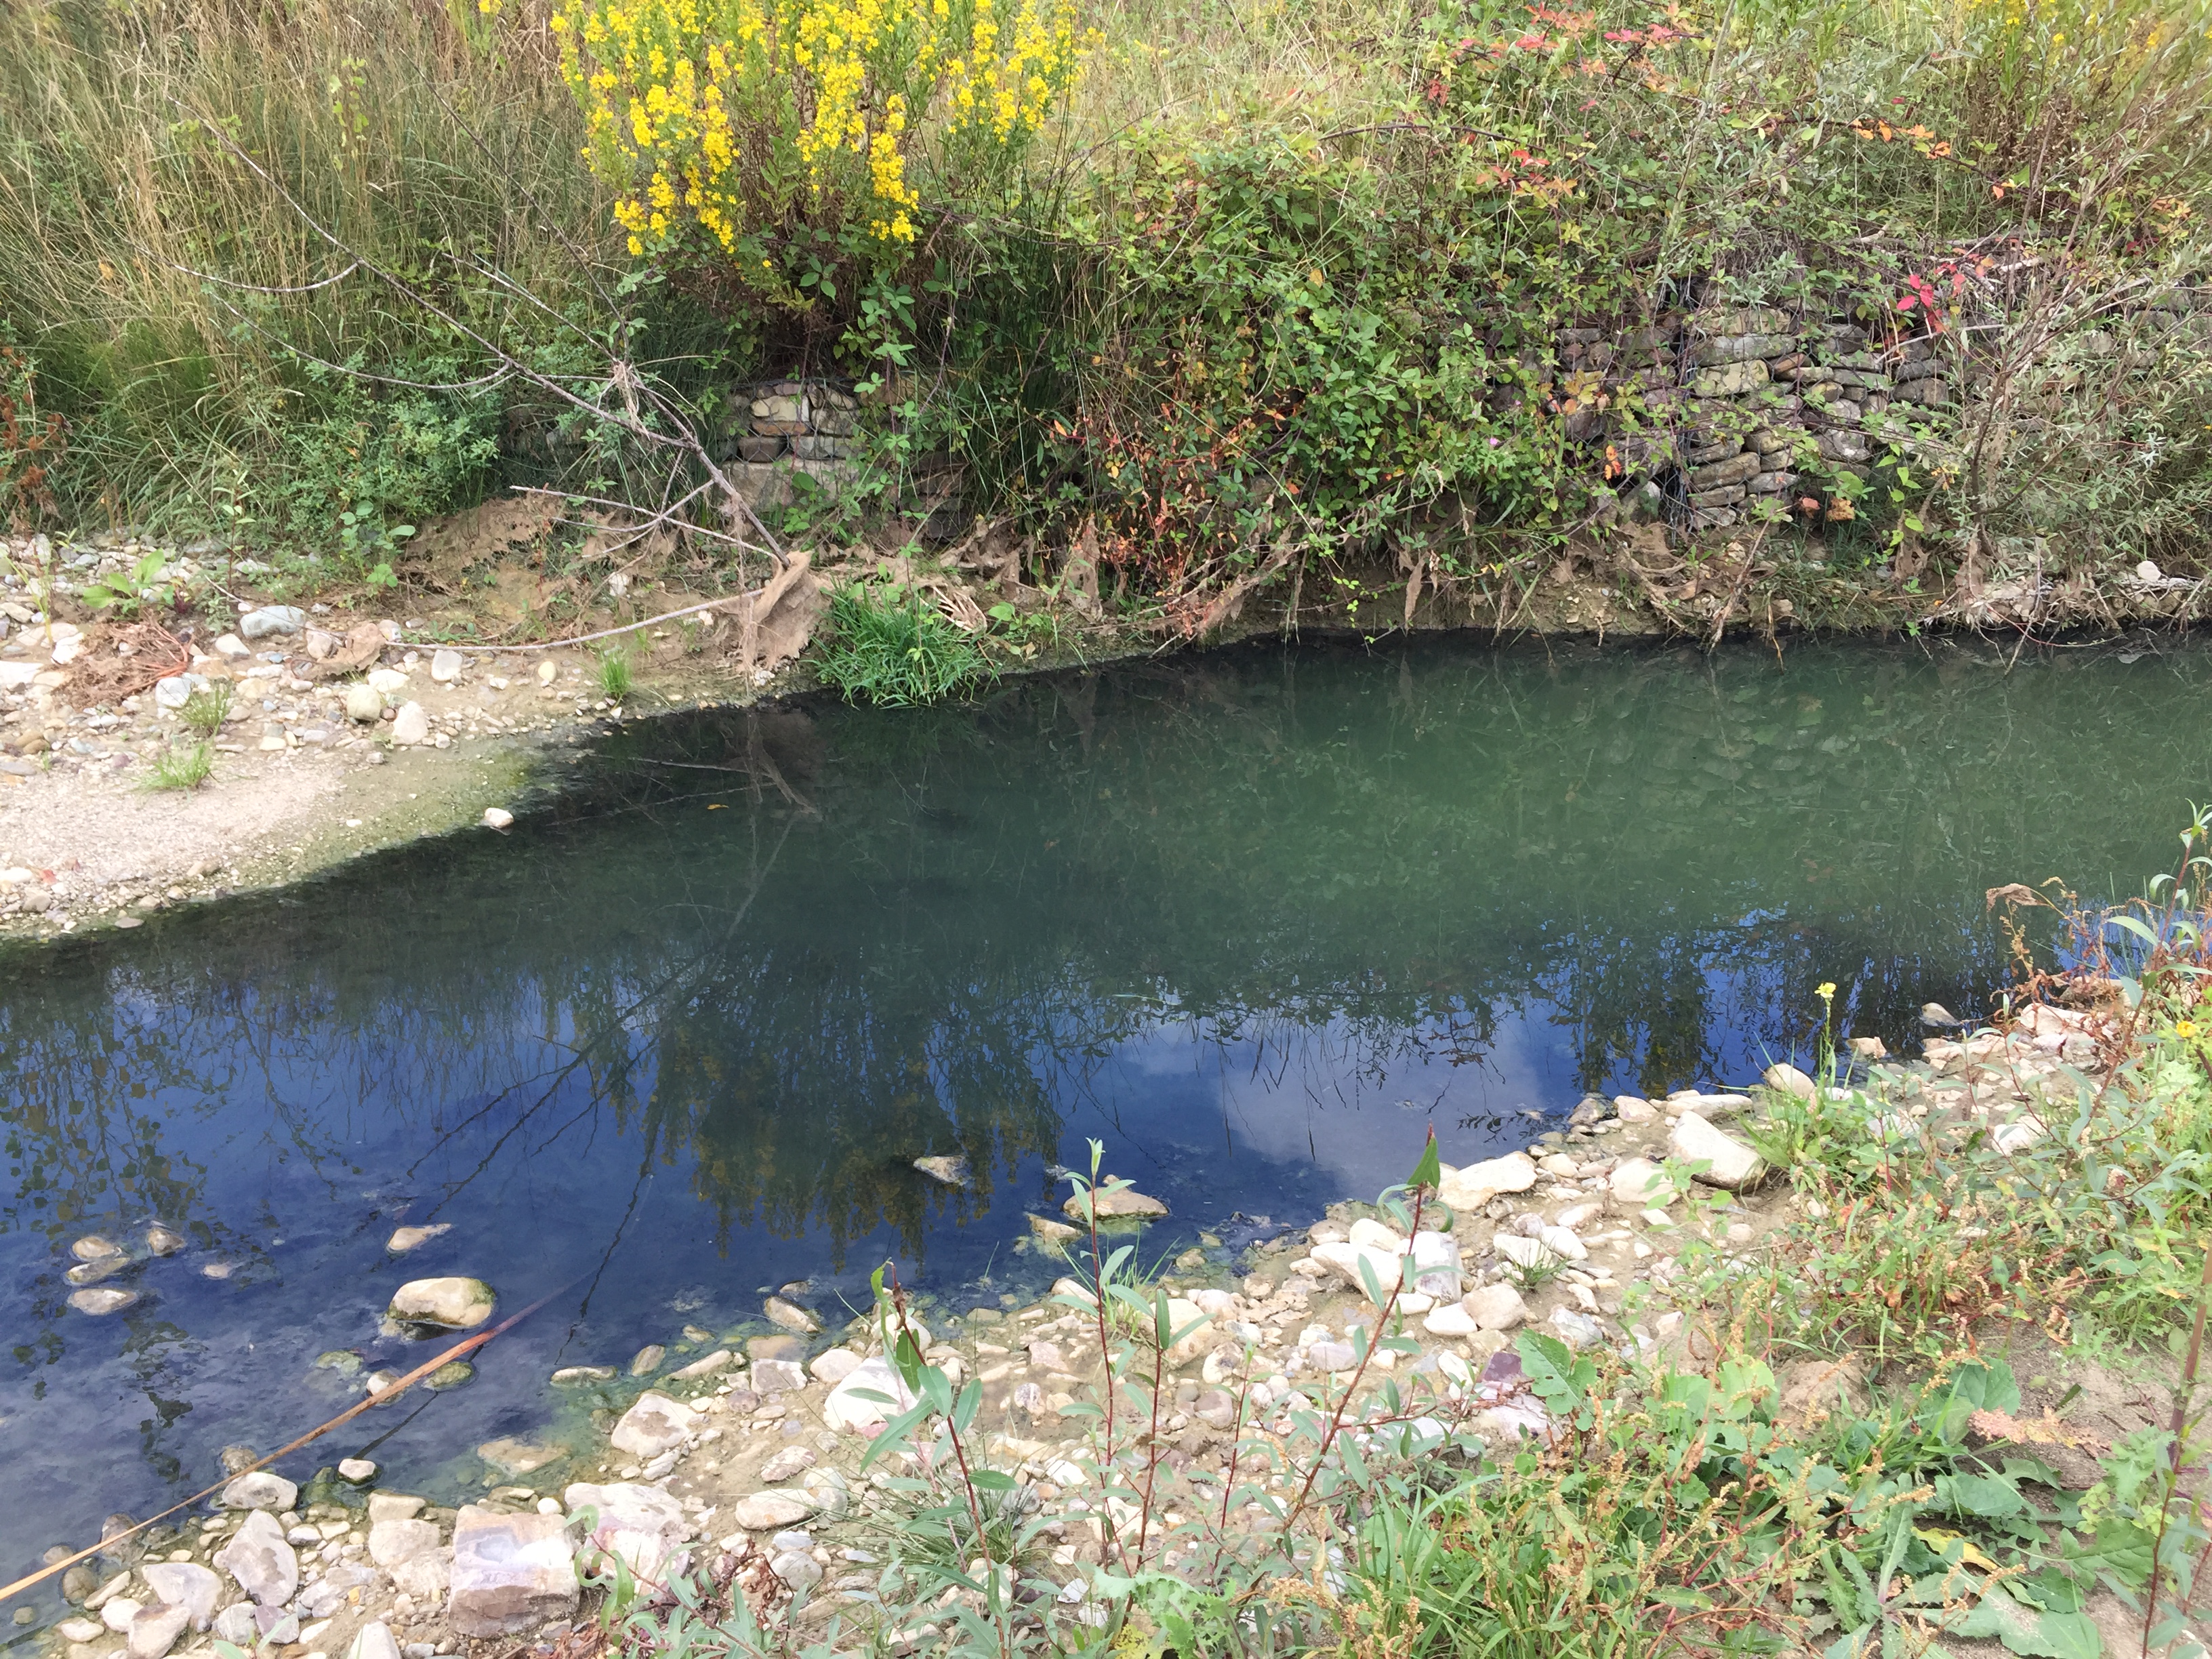 Reino| Inquinamento fiume,1 milione e 400 mila euro per ripristinare la fognatura